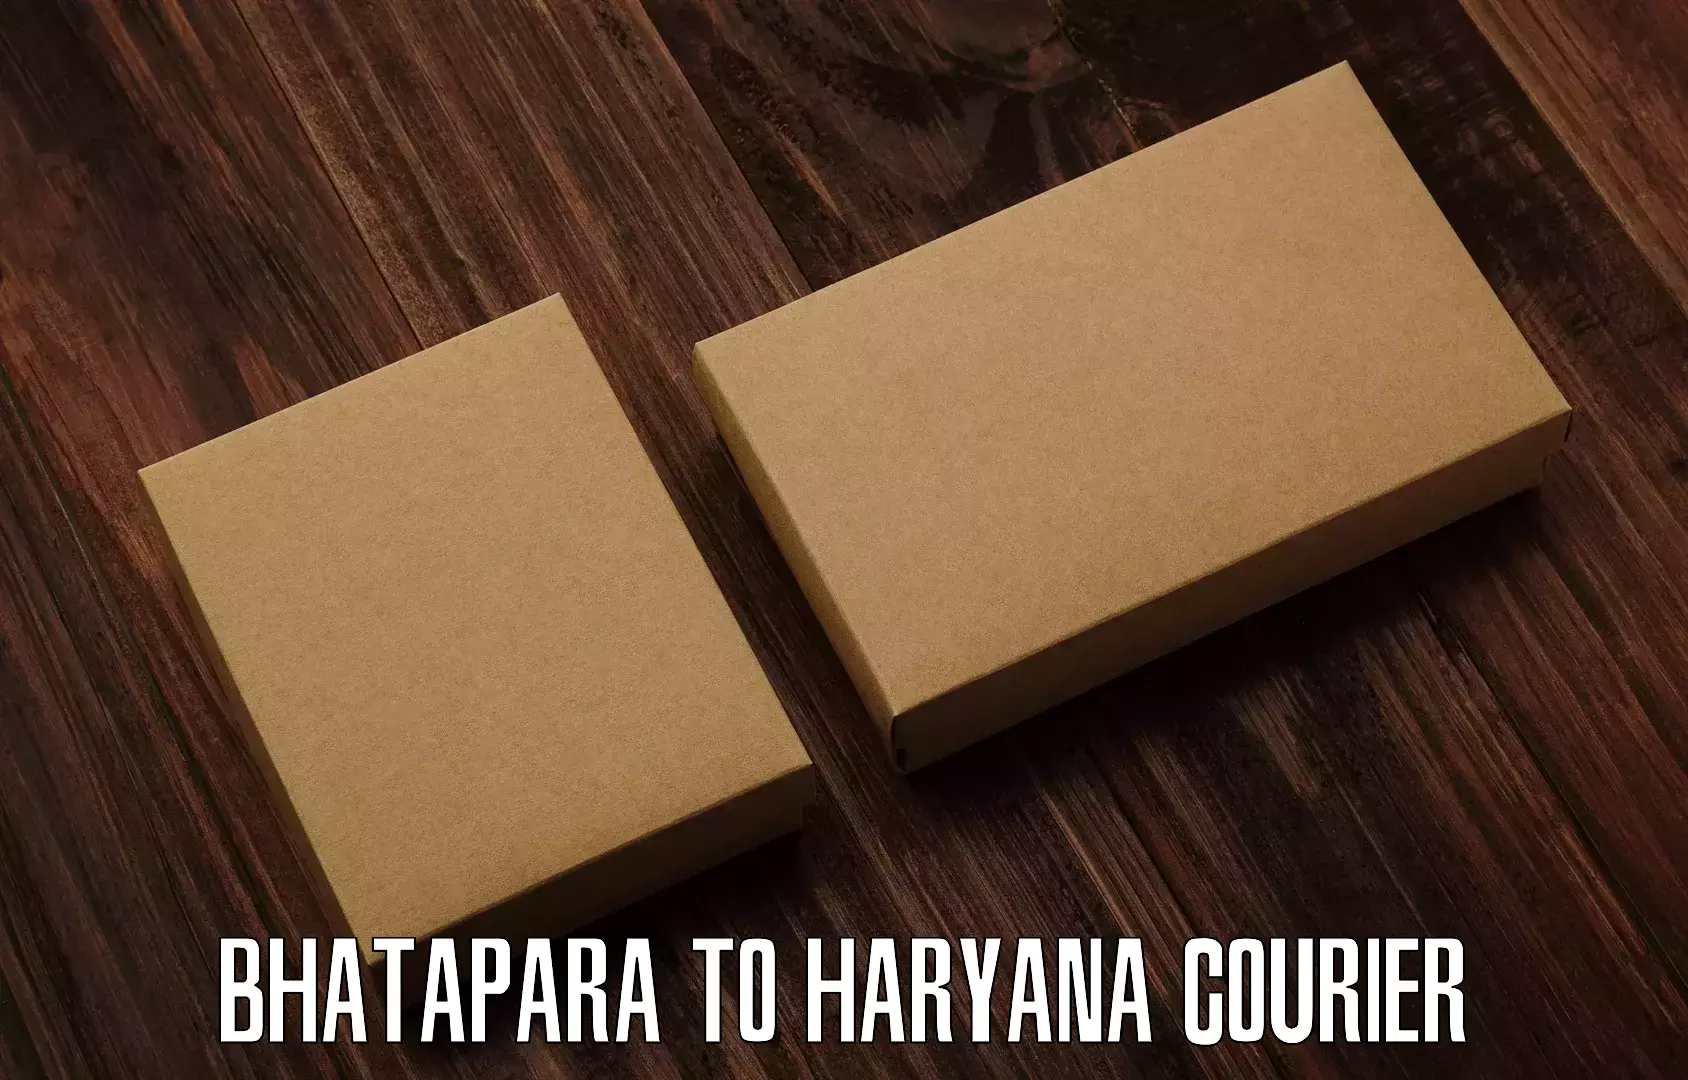 Logistics service provider Bhatapara to Haryana